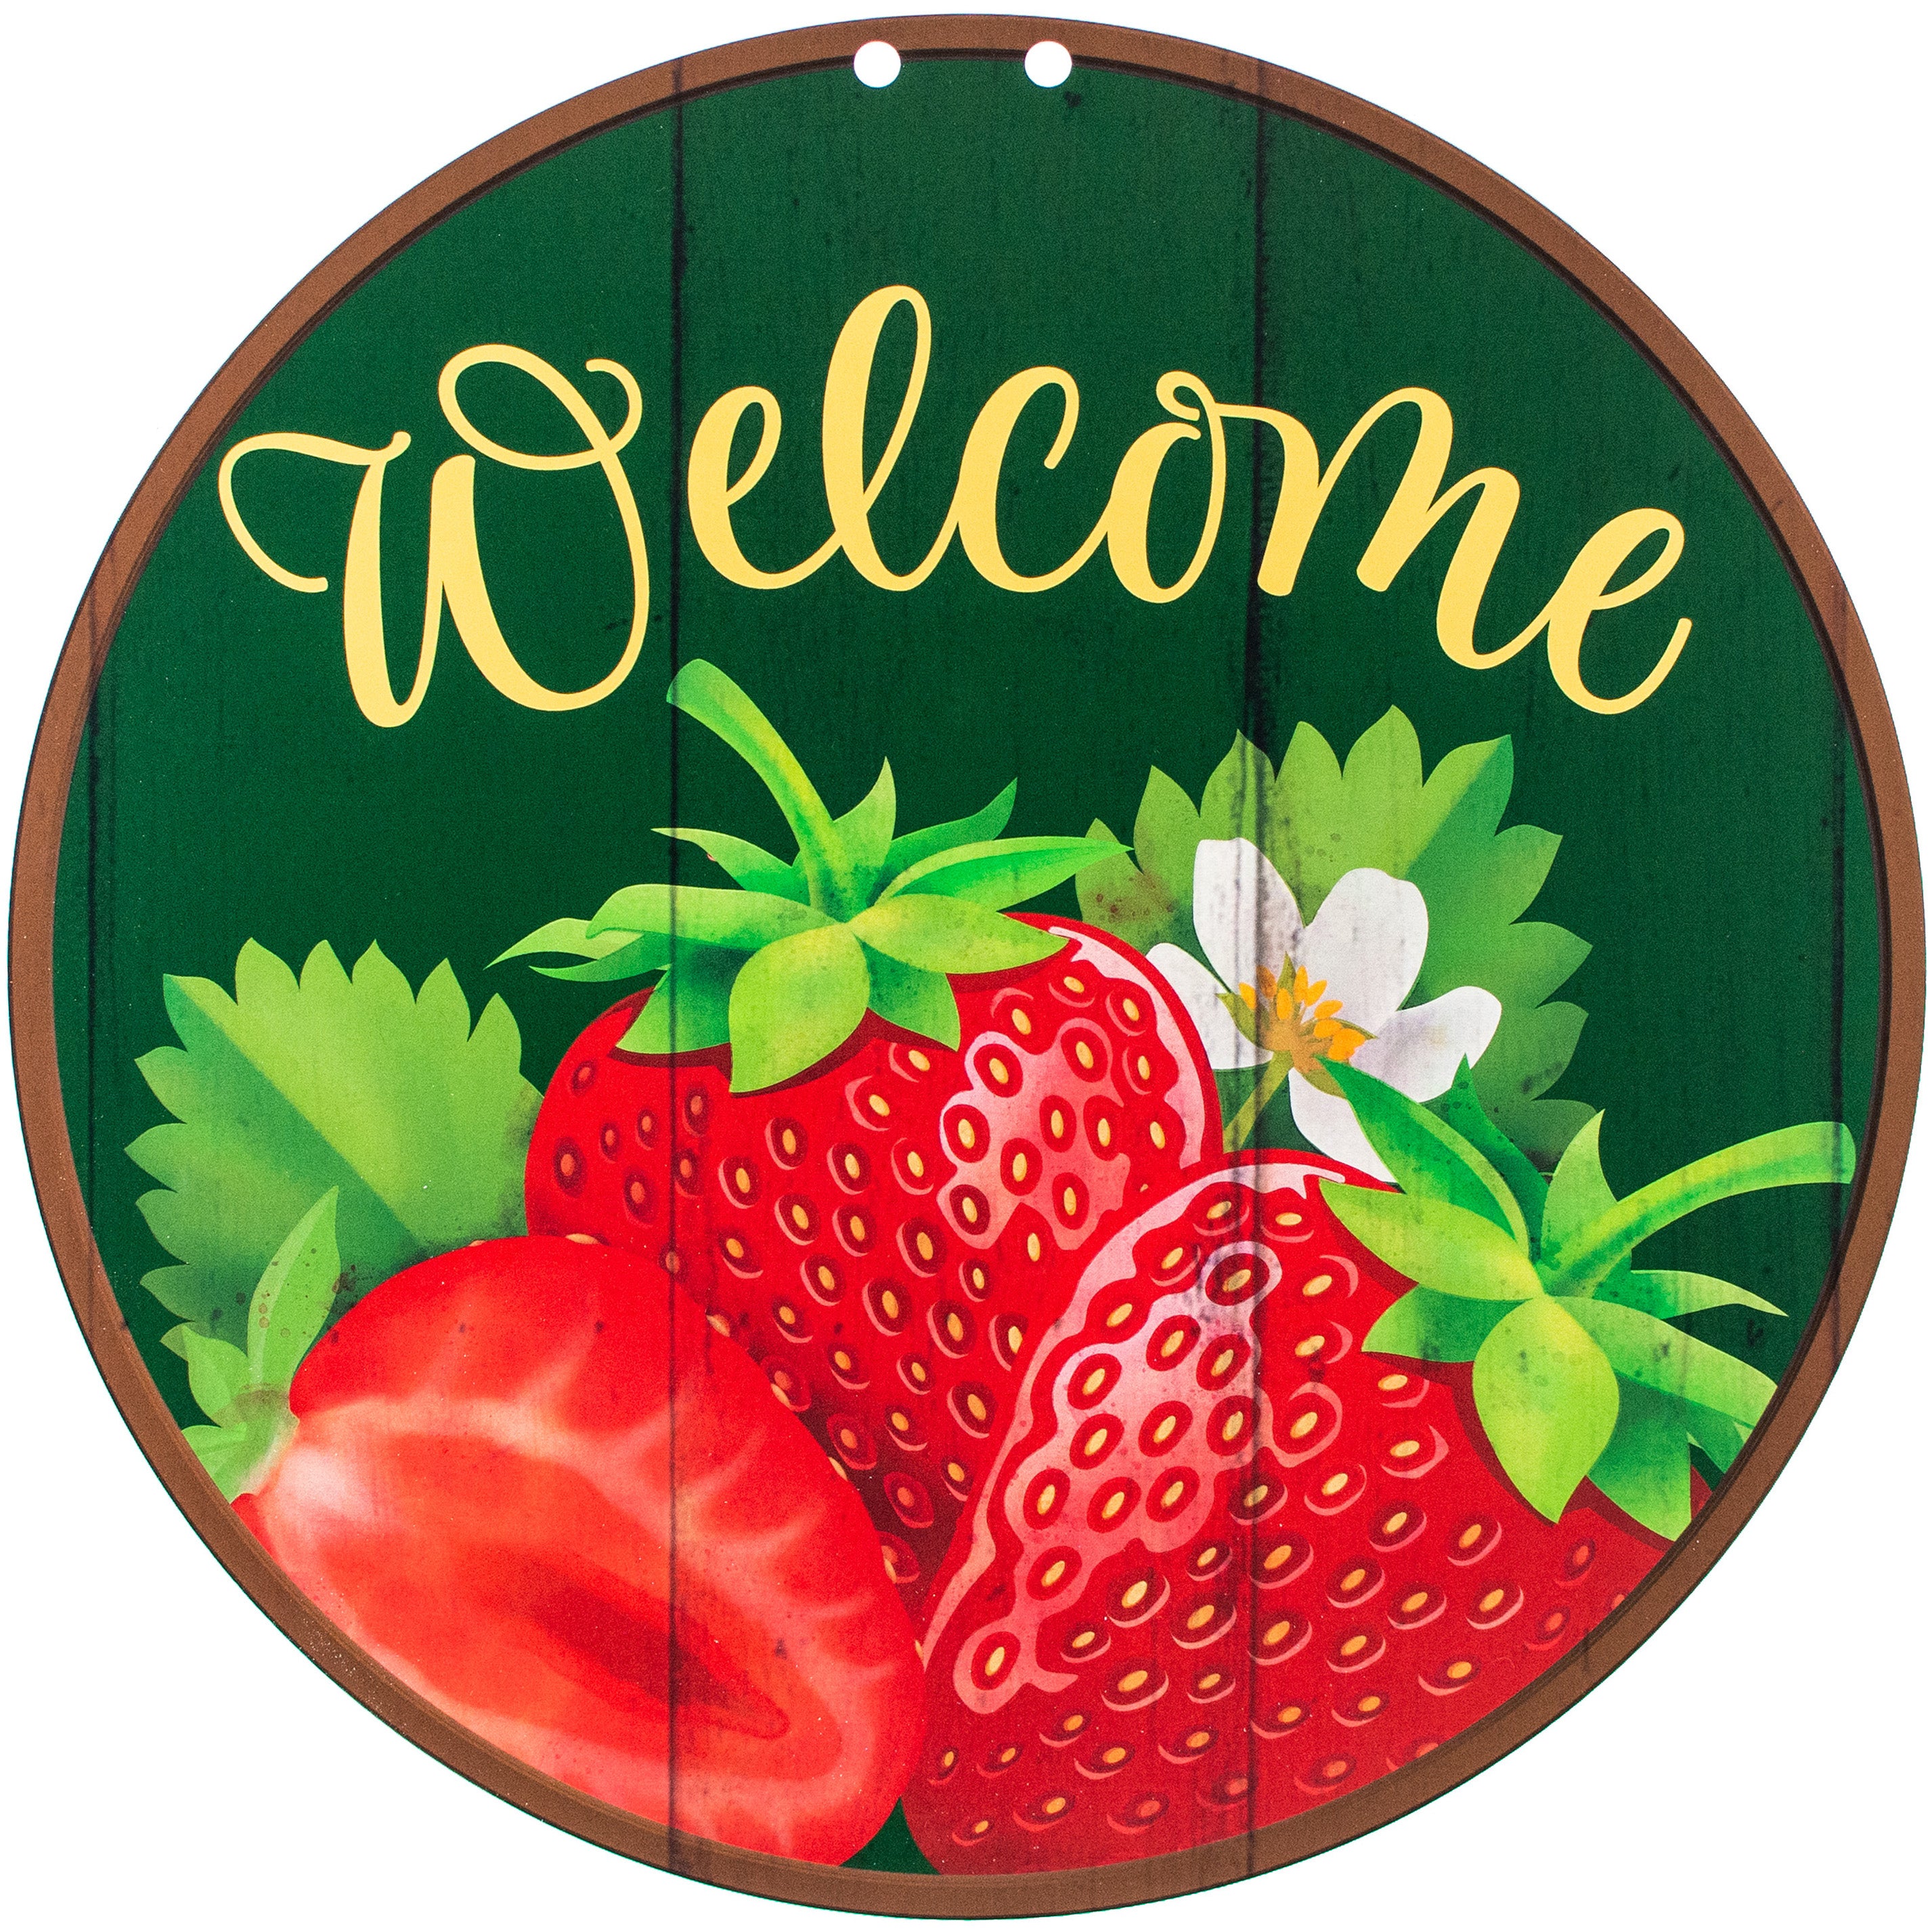 17" Waterproof Door Hanger: Strawberry Welcome